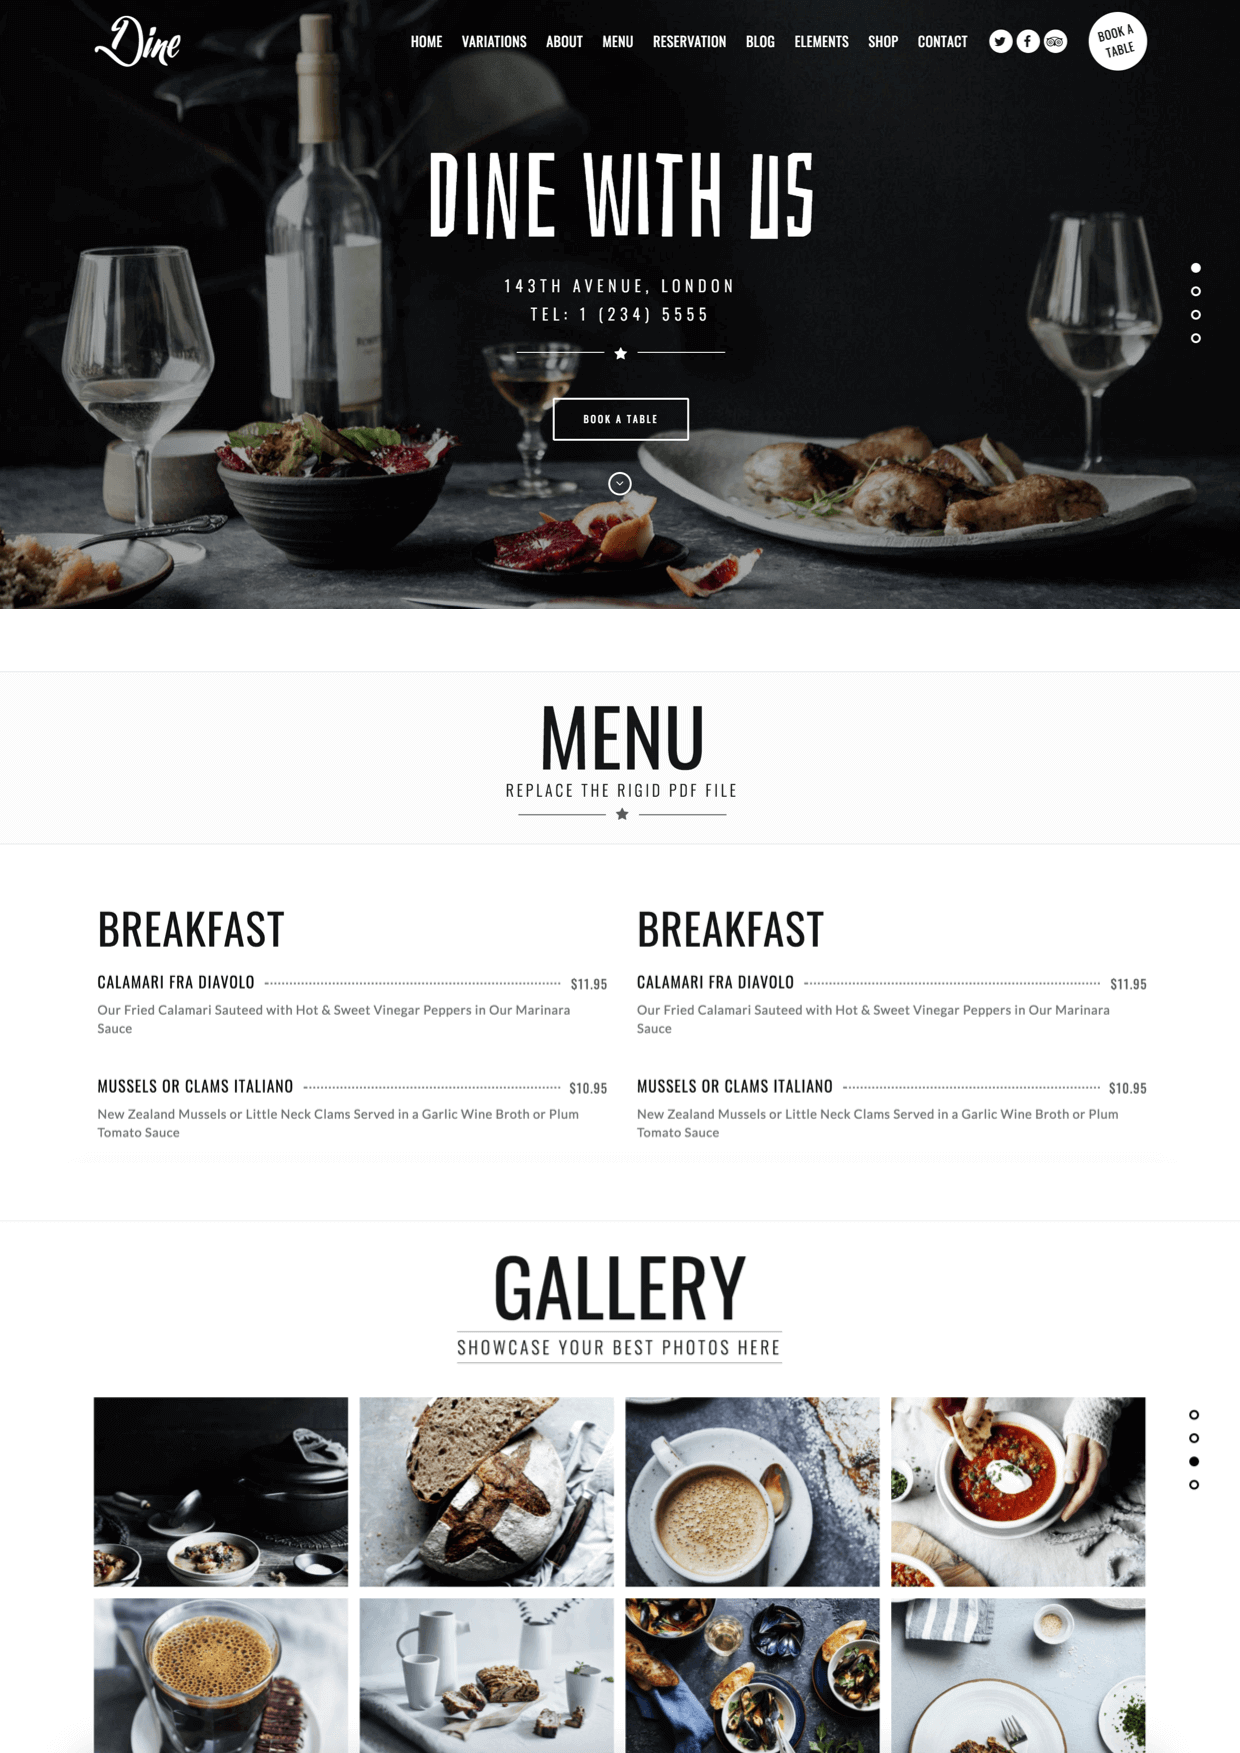 Website for restaurants